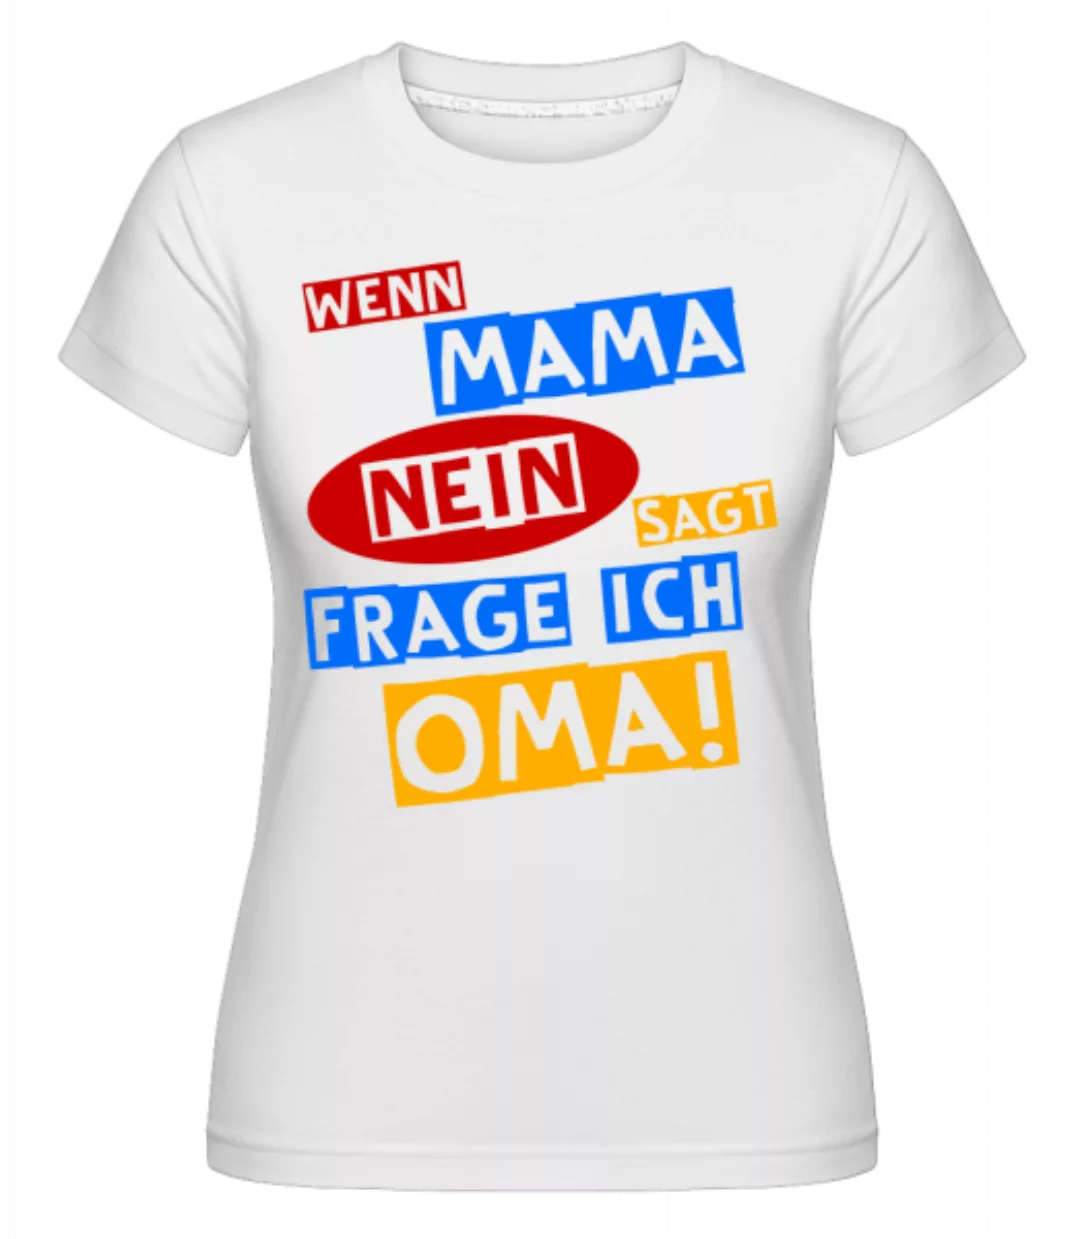 Ich Frage Oma · Shirtinator Frauen T-Shirt günstig online kaufen